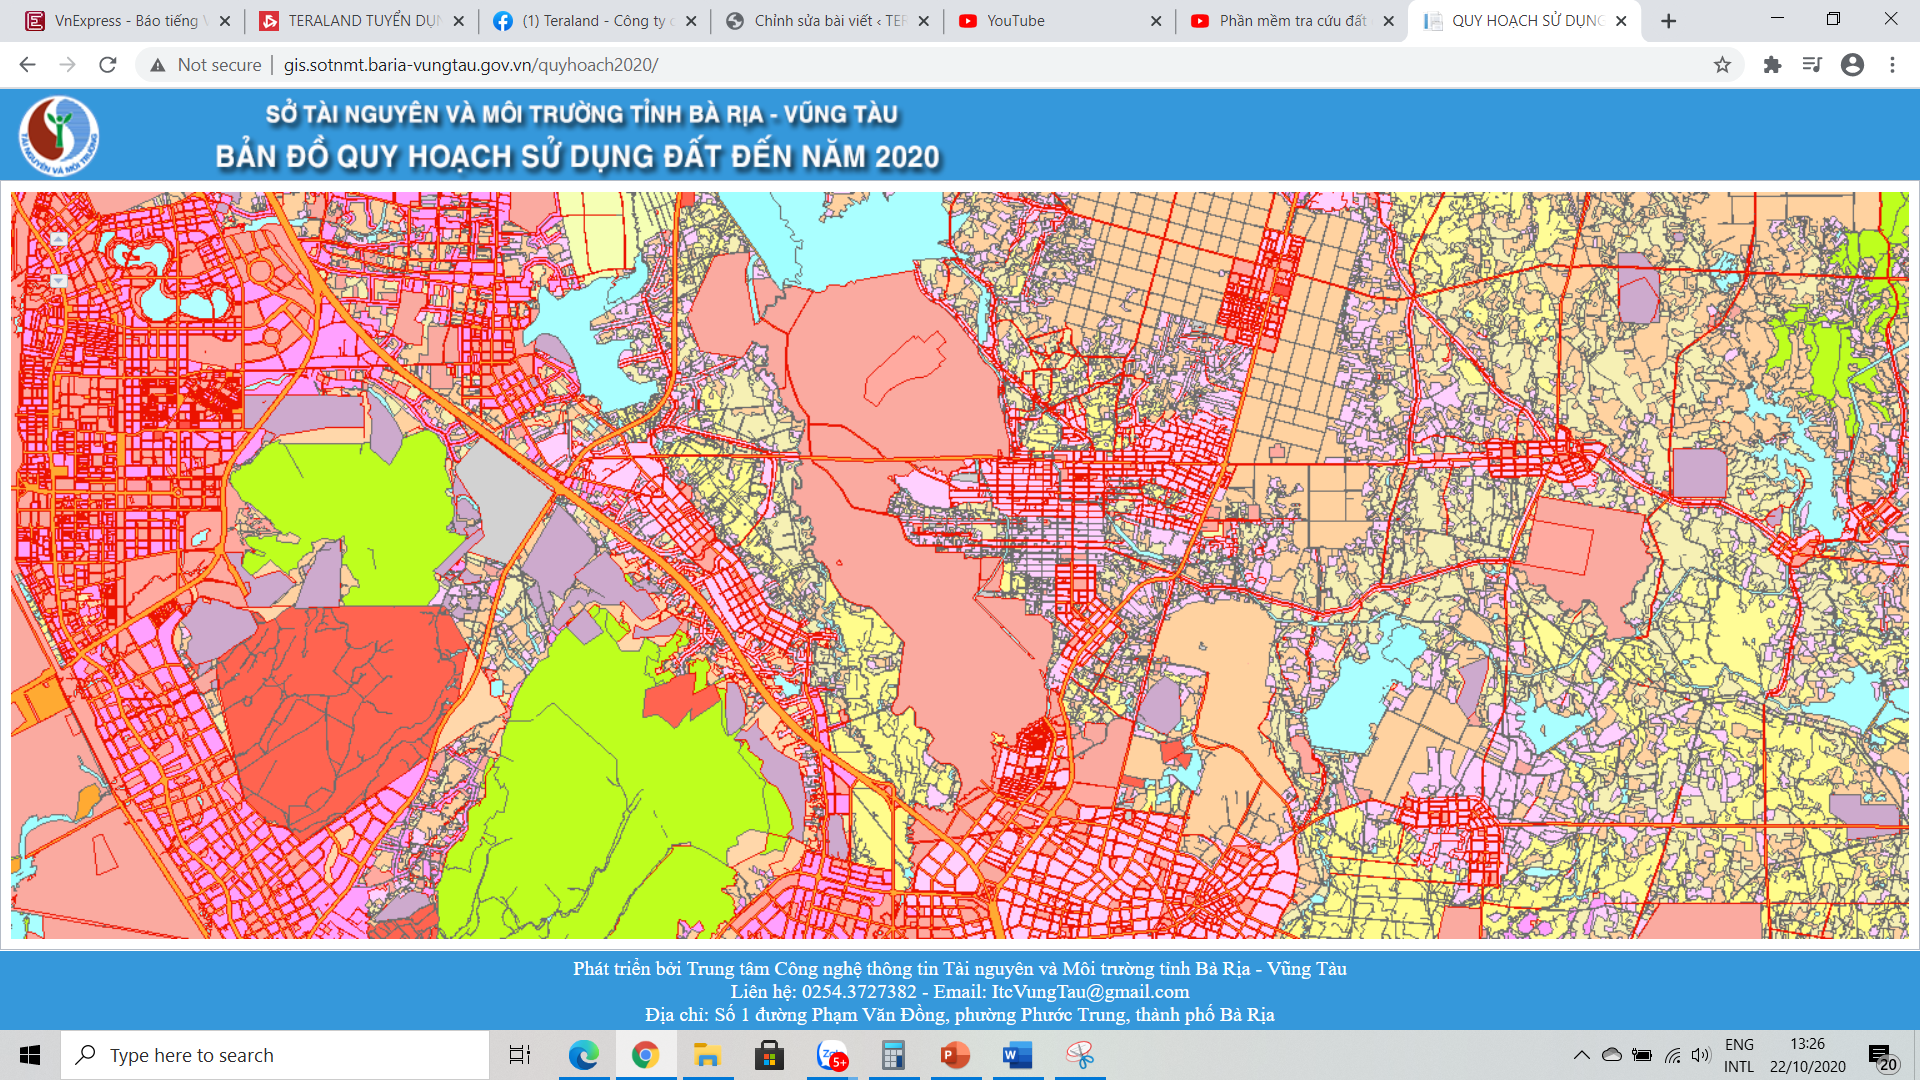 Hãy dùng ứng dụng bản đồ quy hoạch 2024 để xem thông tin mới nhất về quy hoạch đất đai. Với tính năng tìm kiếm dễ dàng, bạn có thể tìm kiếm bất cứ khu vực nào và xem chi tiết quy hoạch, chiều cao tối đa cho phép, vùng hạn chế xây dựng và nhiều thuộc tính khác. Nhấn vào hình ảnh để khám phá ứng dụng này ngay!